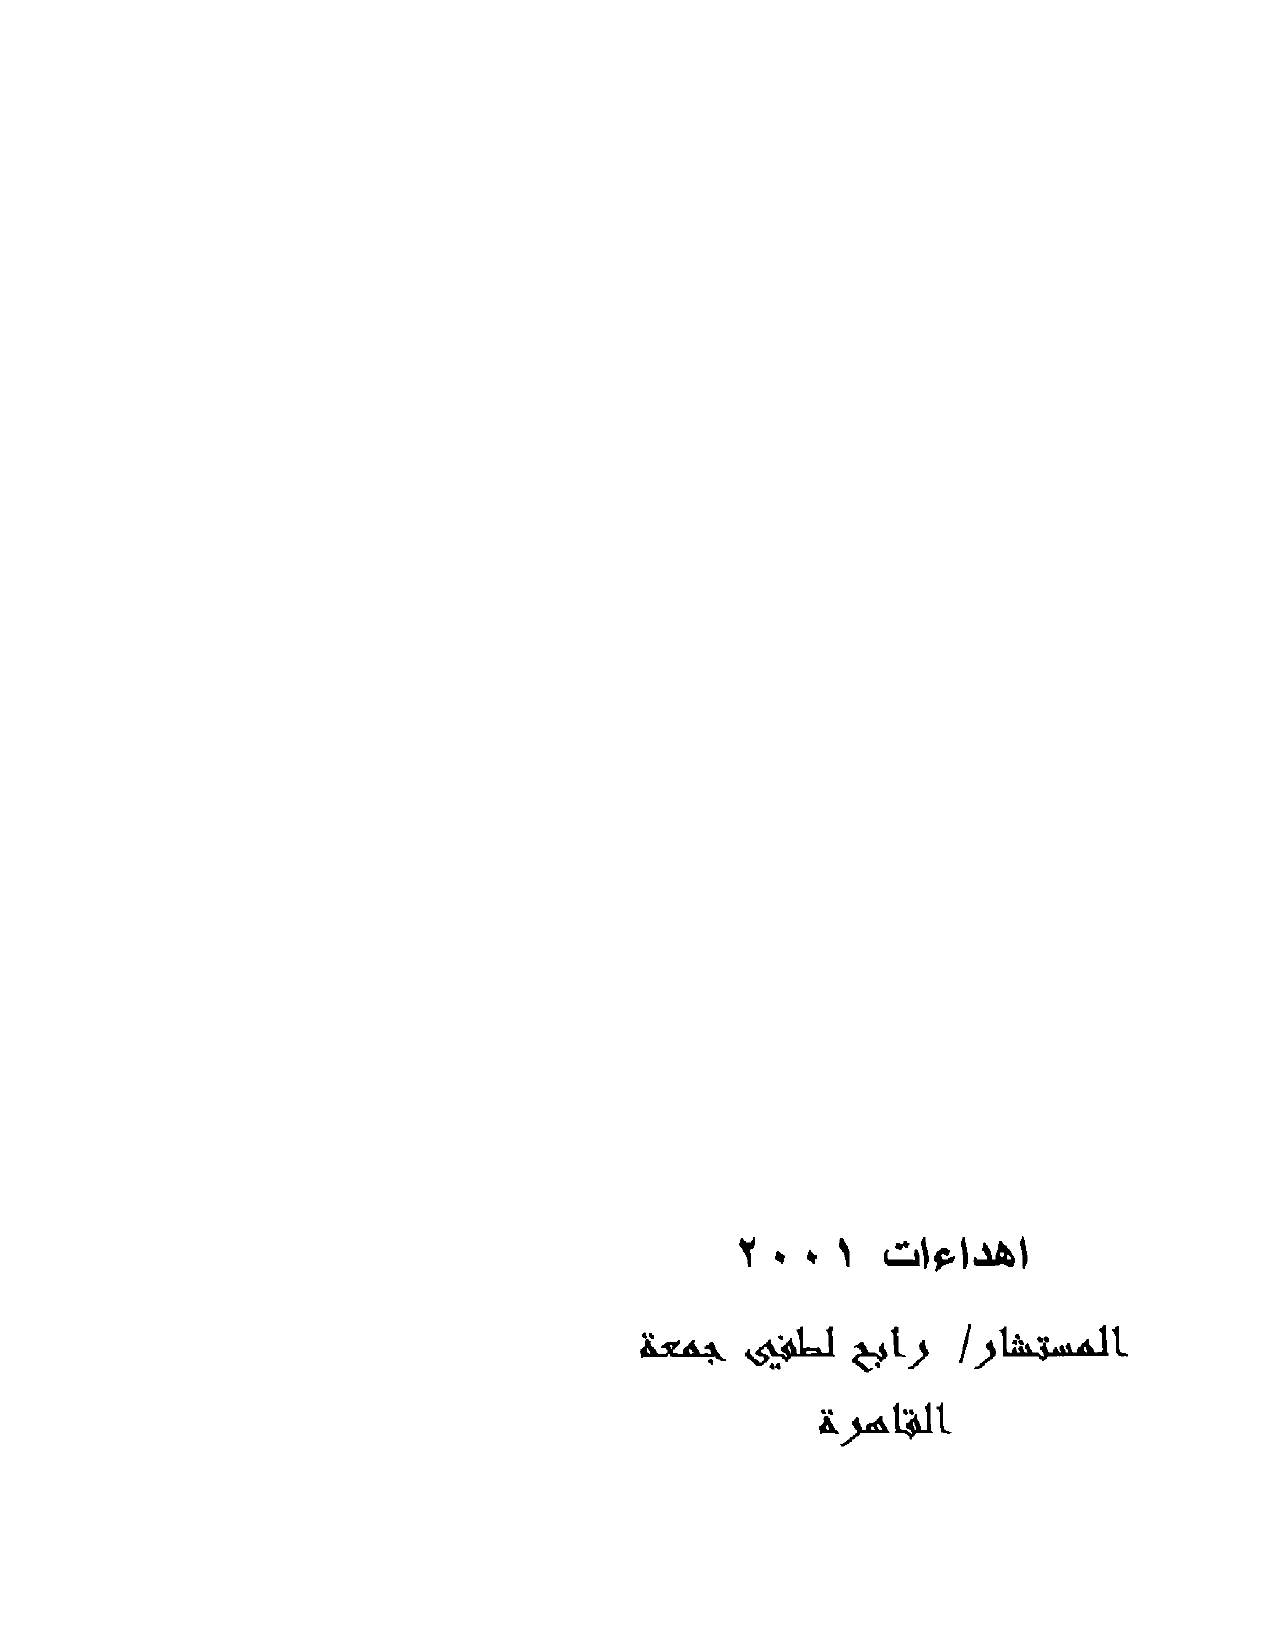 تنزيل وتحميل كتاِب قرطبة في التاريخ الاسلامي pdf برابط مباشر مجاناً 